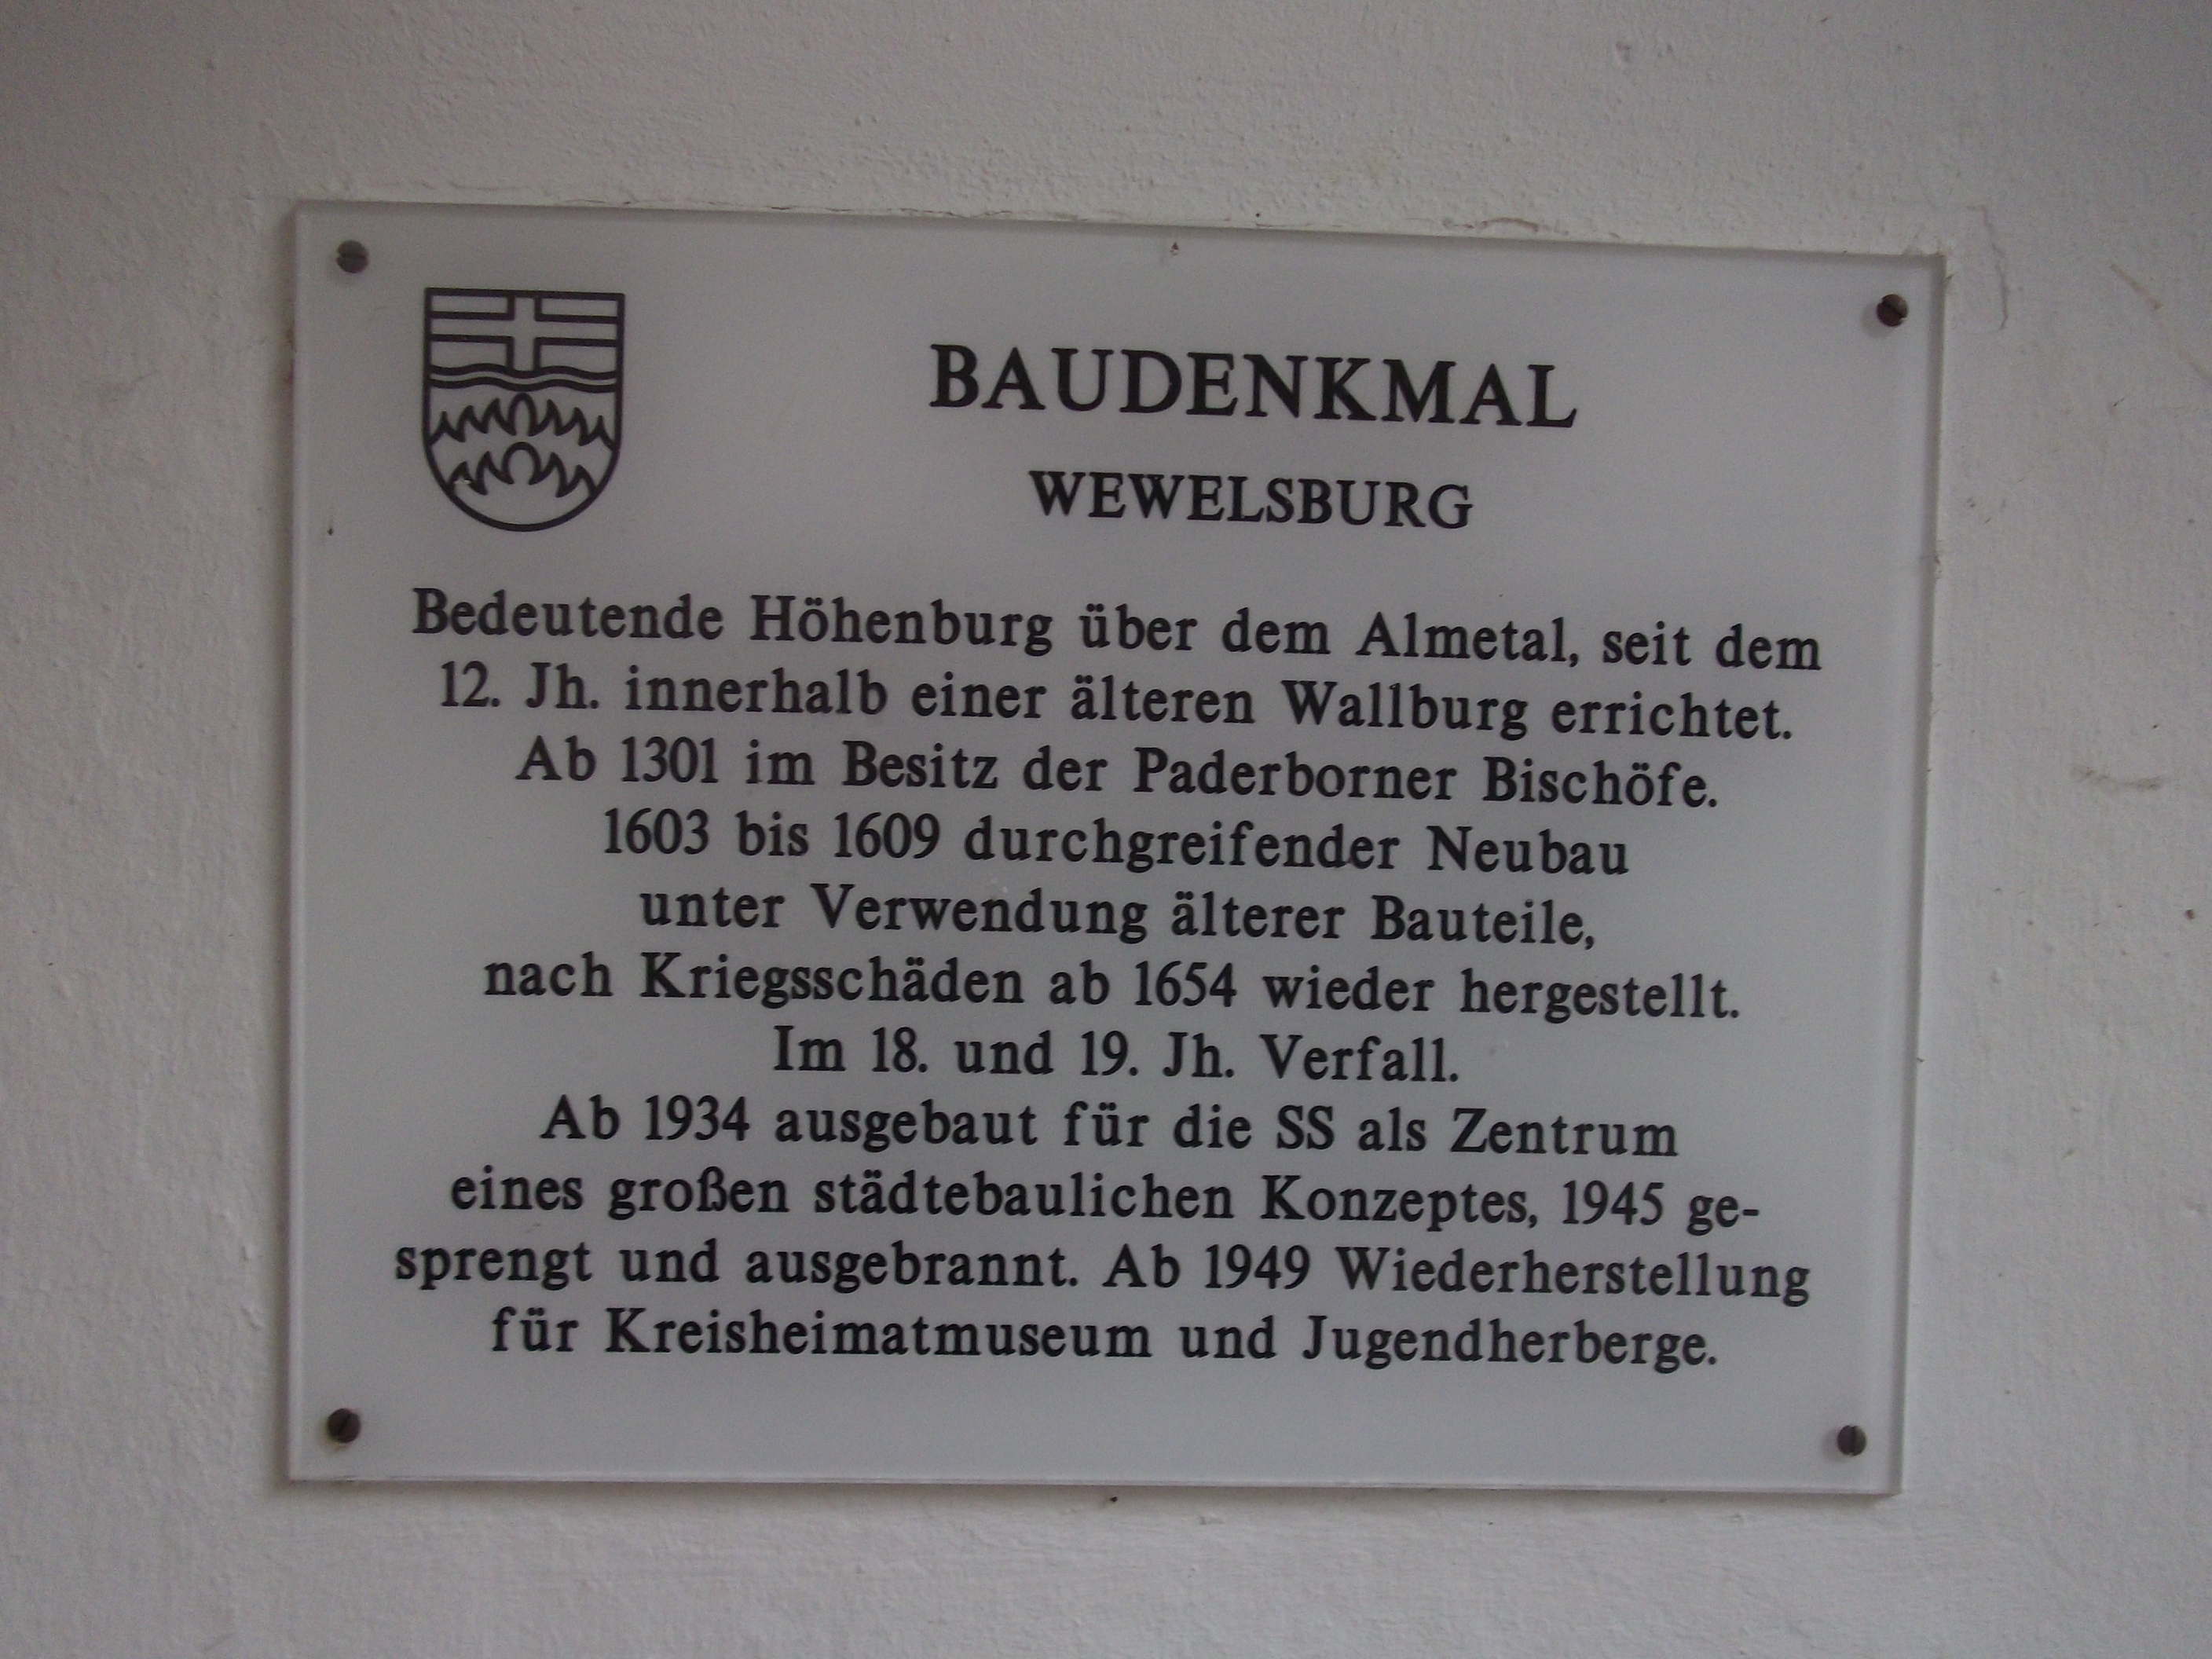 Geschichte der Wewelsburg auf einer Infotafel am Eingang